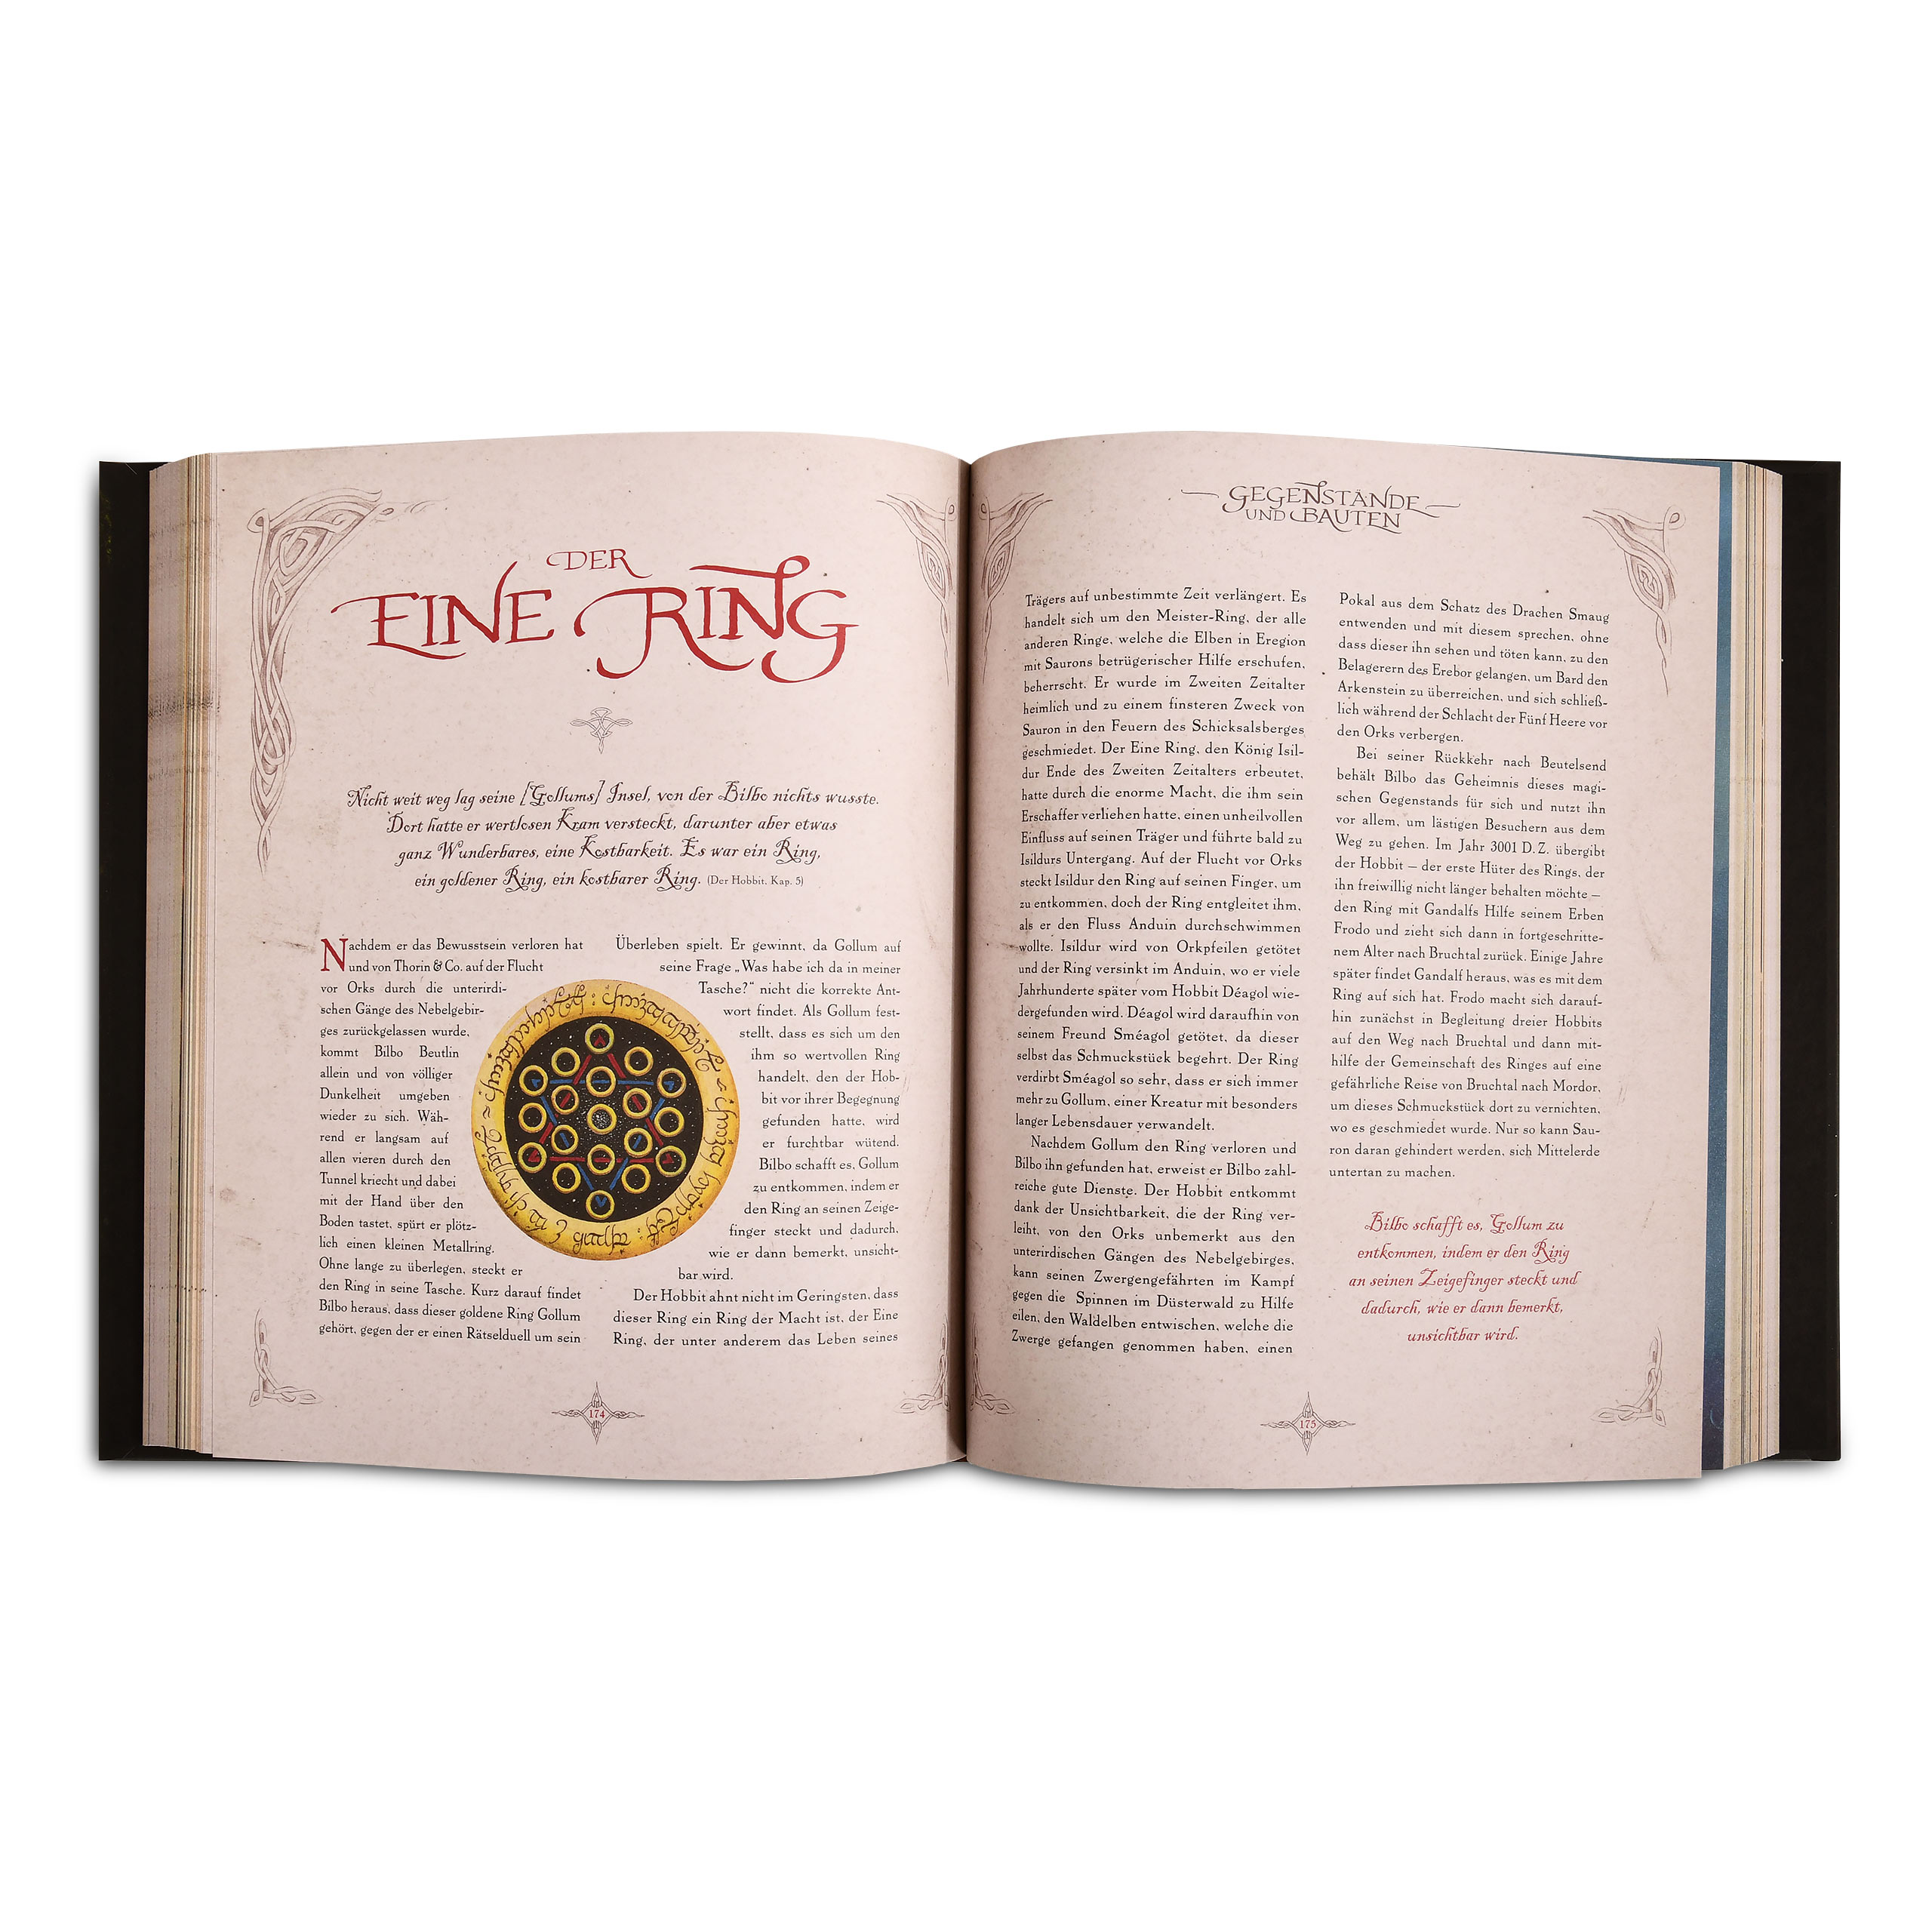 Tolkiens Legendarium - Die große Hobbit-Enzyklopädie